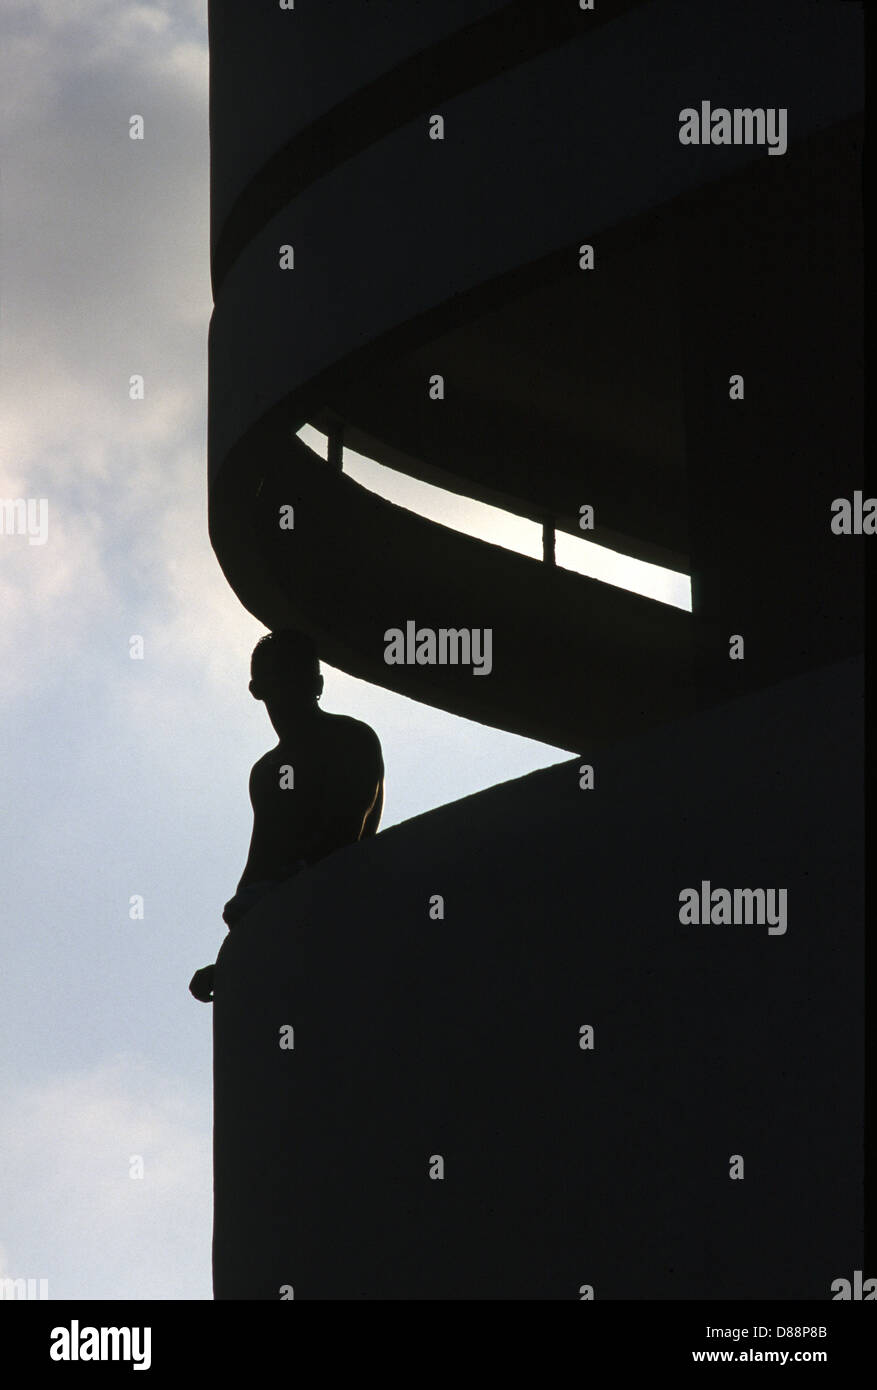 Un homme debout dans un style Bauhaus en balcon Dizingof Square centre-ville de Tel Aviv, Israël. Tel Aviv est un site classé au Patrimoine Mondial pour son architecture unique, le plus grand montant de 'International' des bâtiments de style Bauhaus dans le monde (4000). Banque D'Images